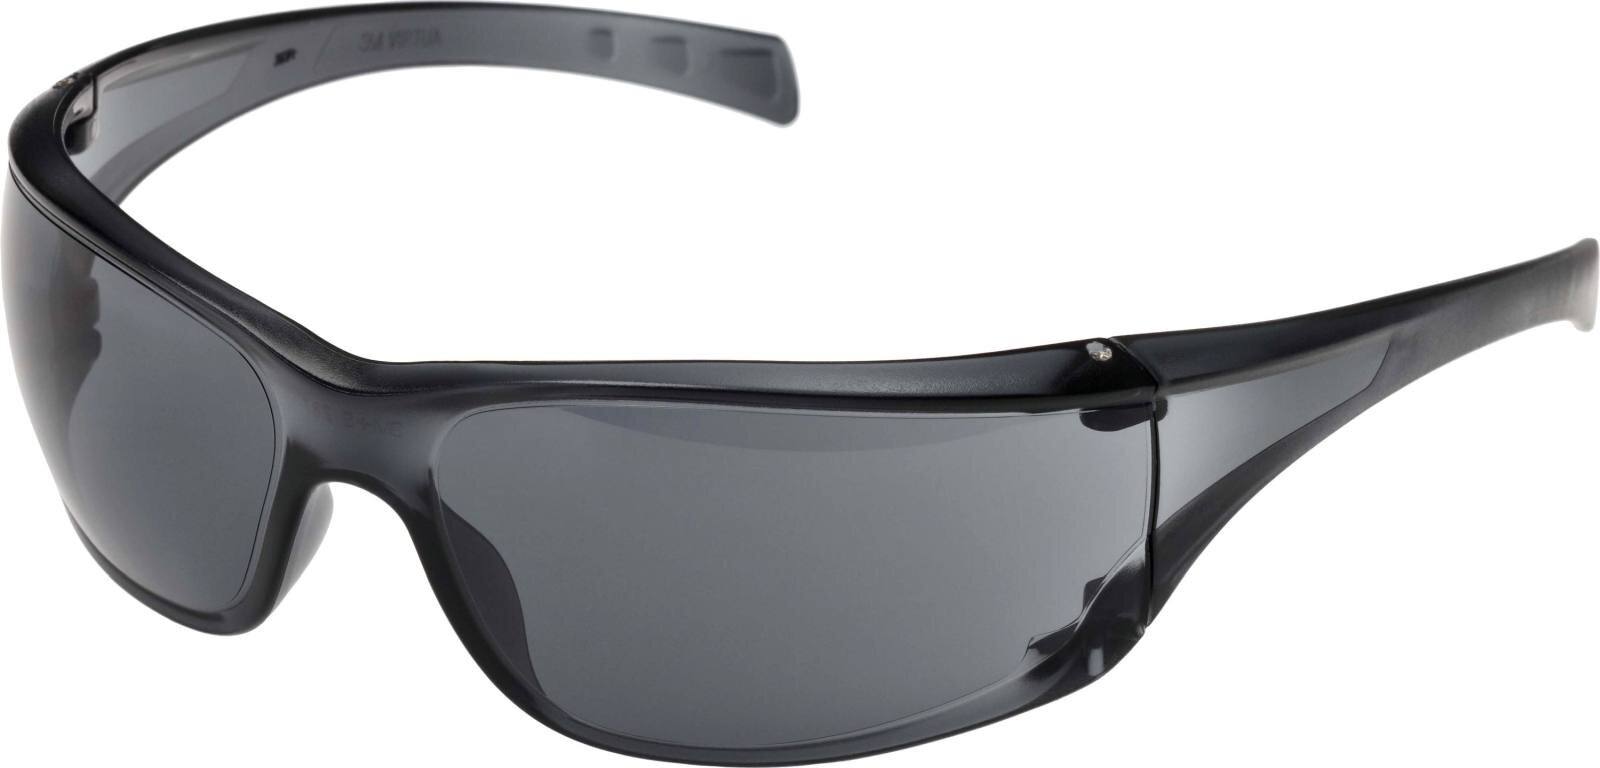 3M Schutzbrille "Virtua" AP grau AP/AS/UV